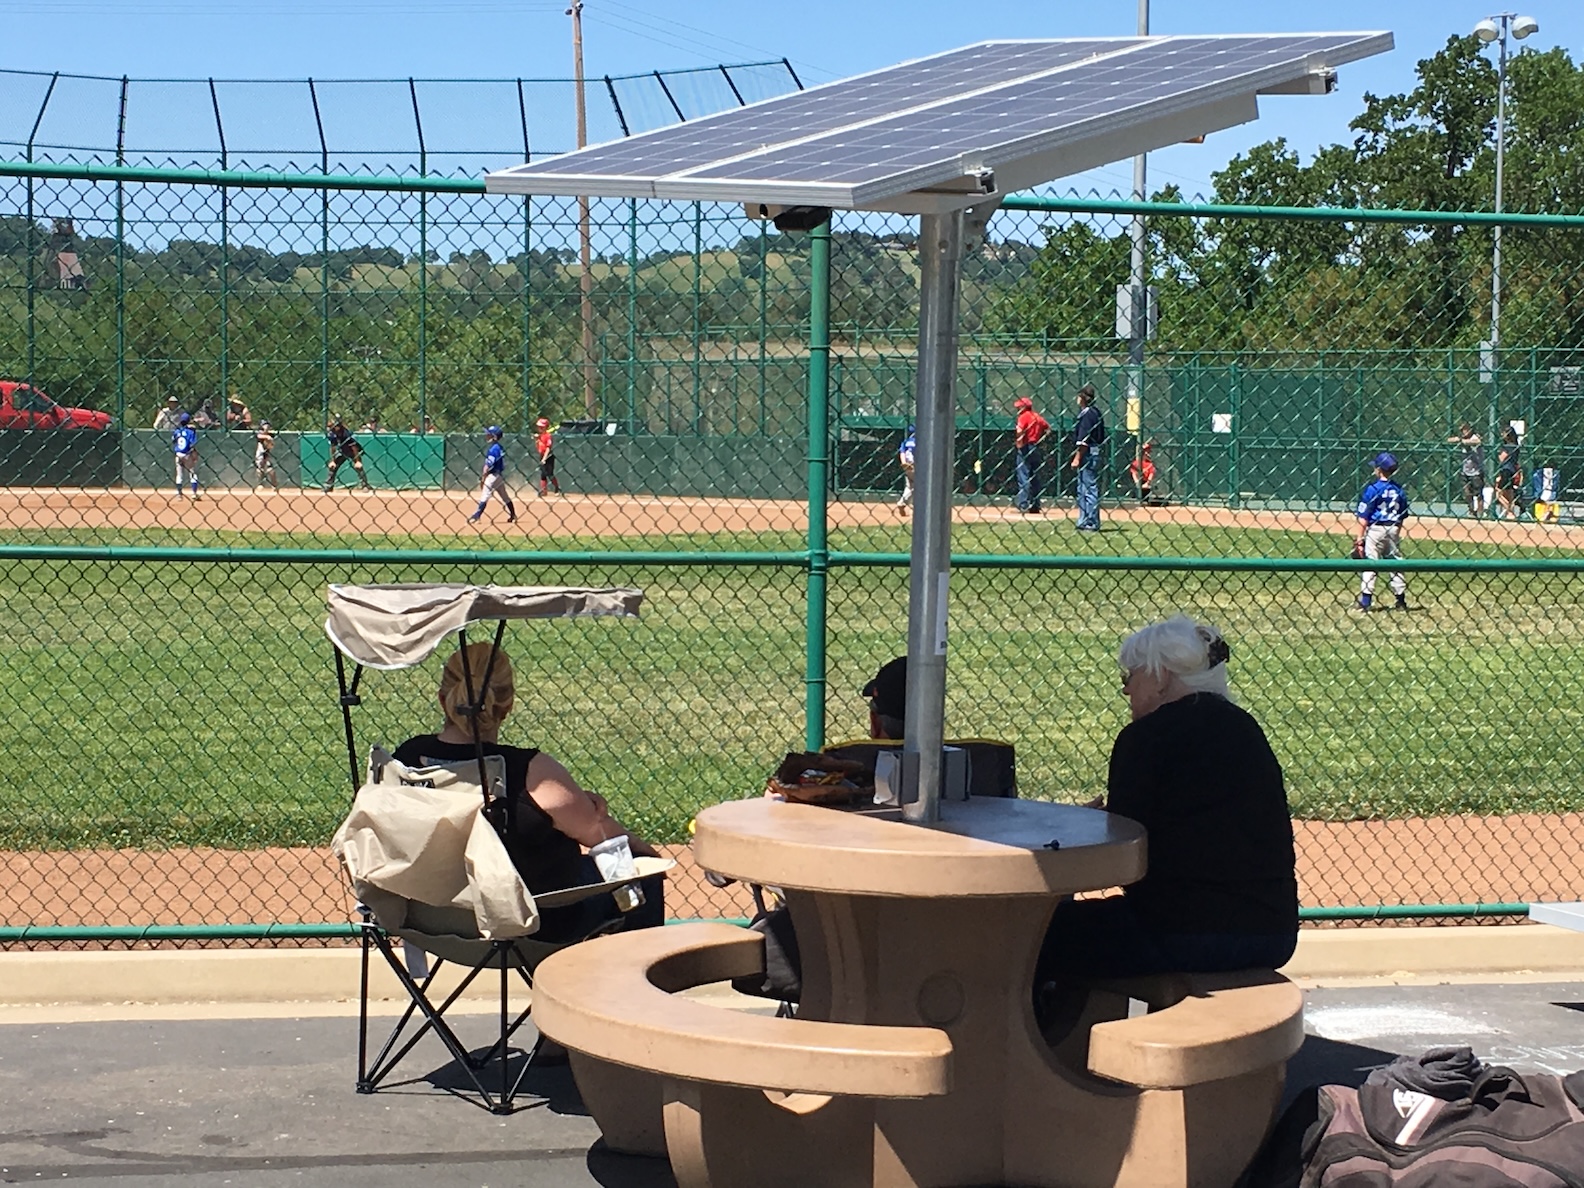 ShadeCharger solar picnic table at baseball game